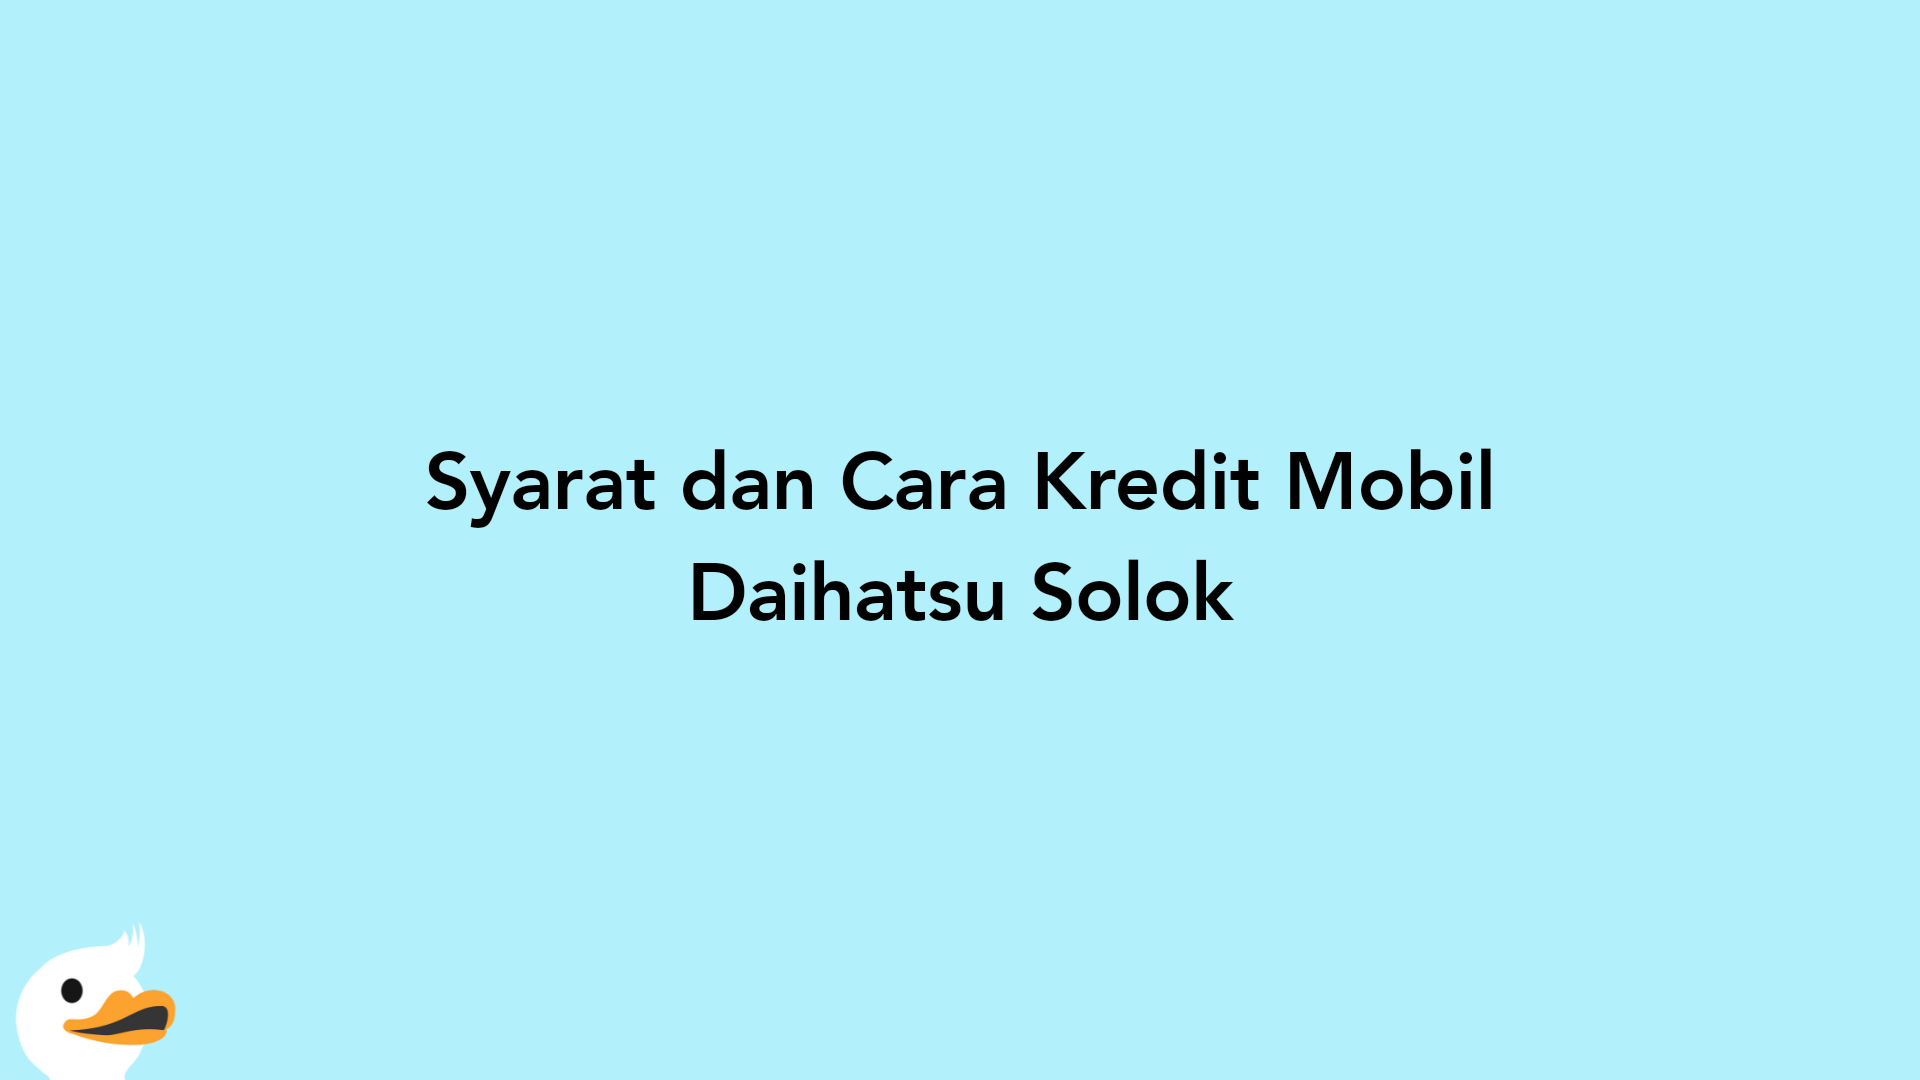 Syarat dan Cara Kredit Mobil Daihatsu Solok